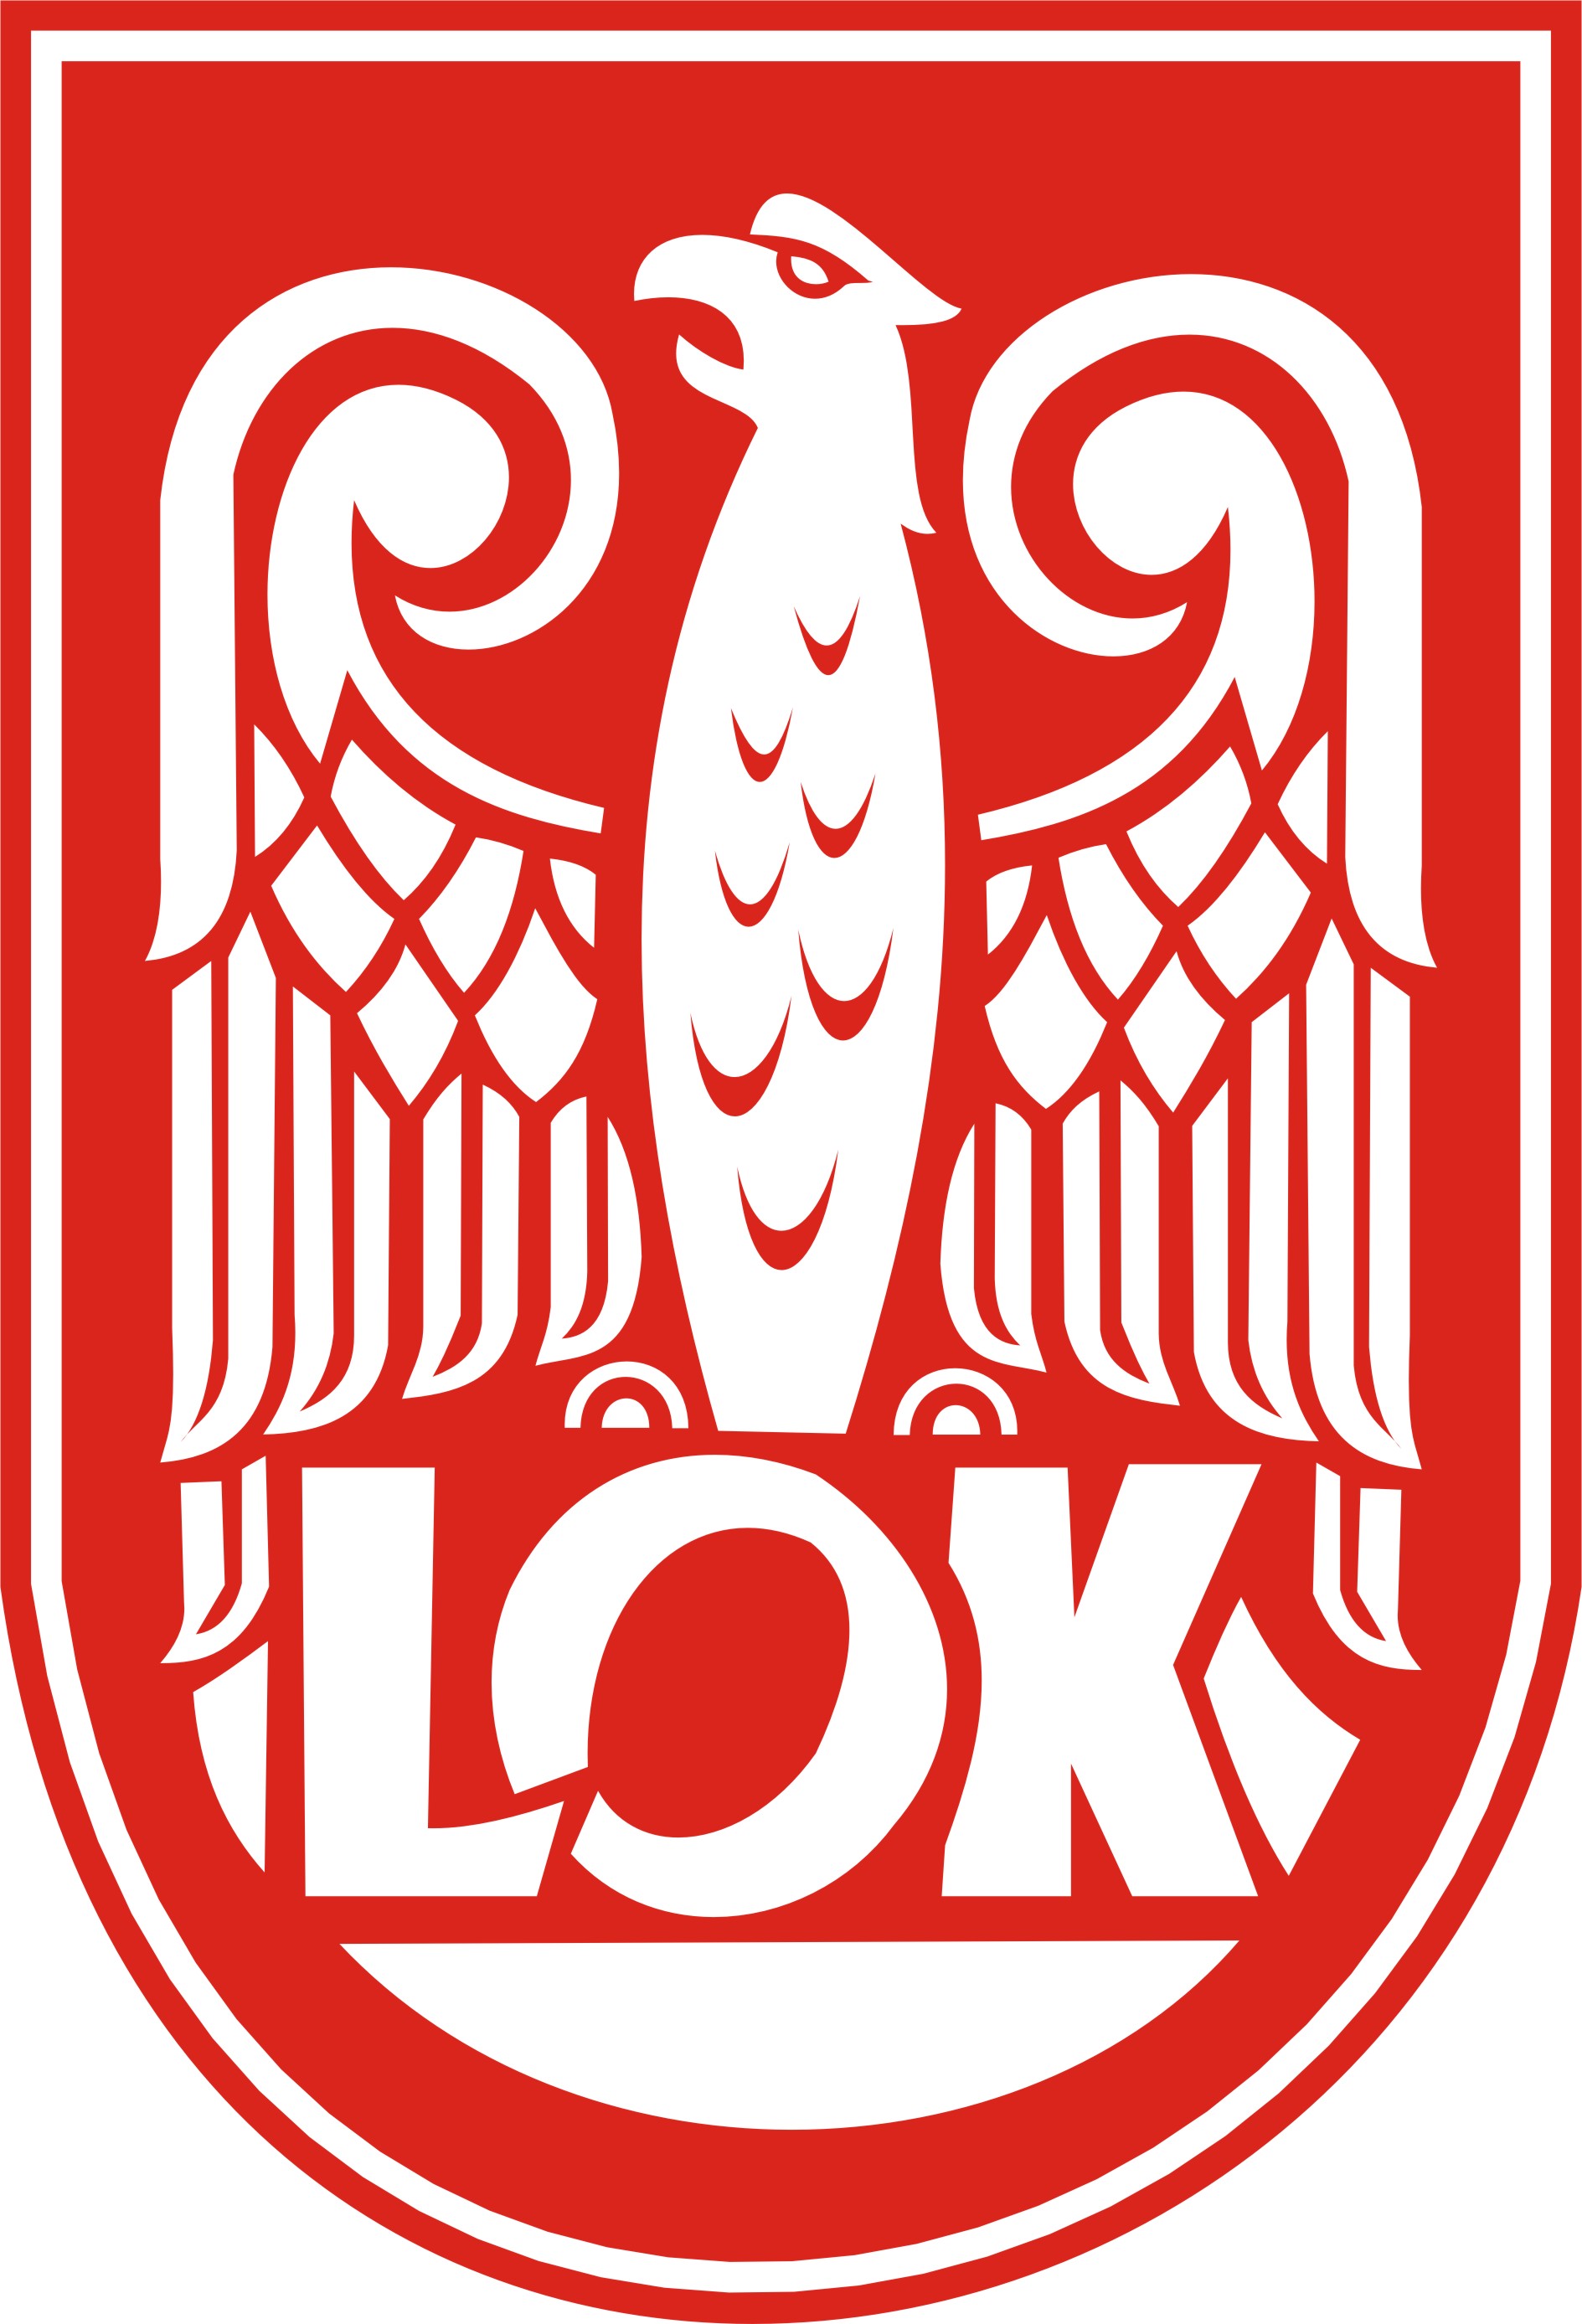 - logo_lok.jpg